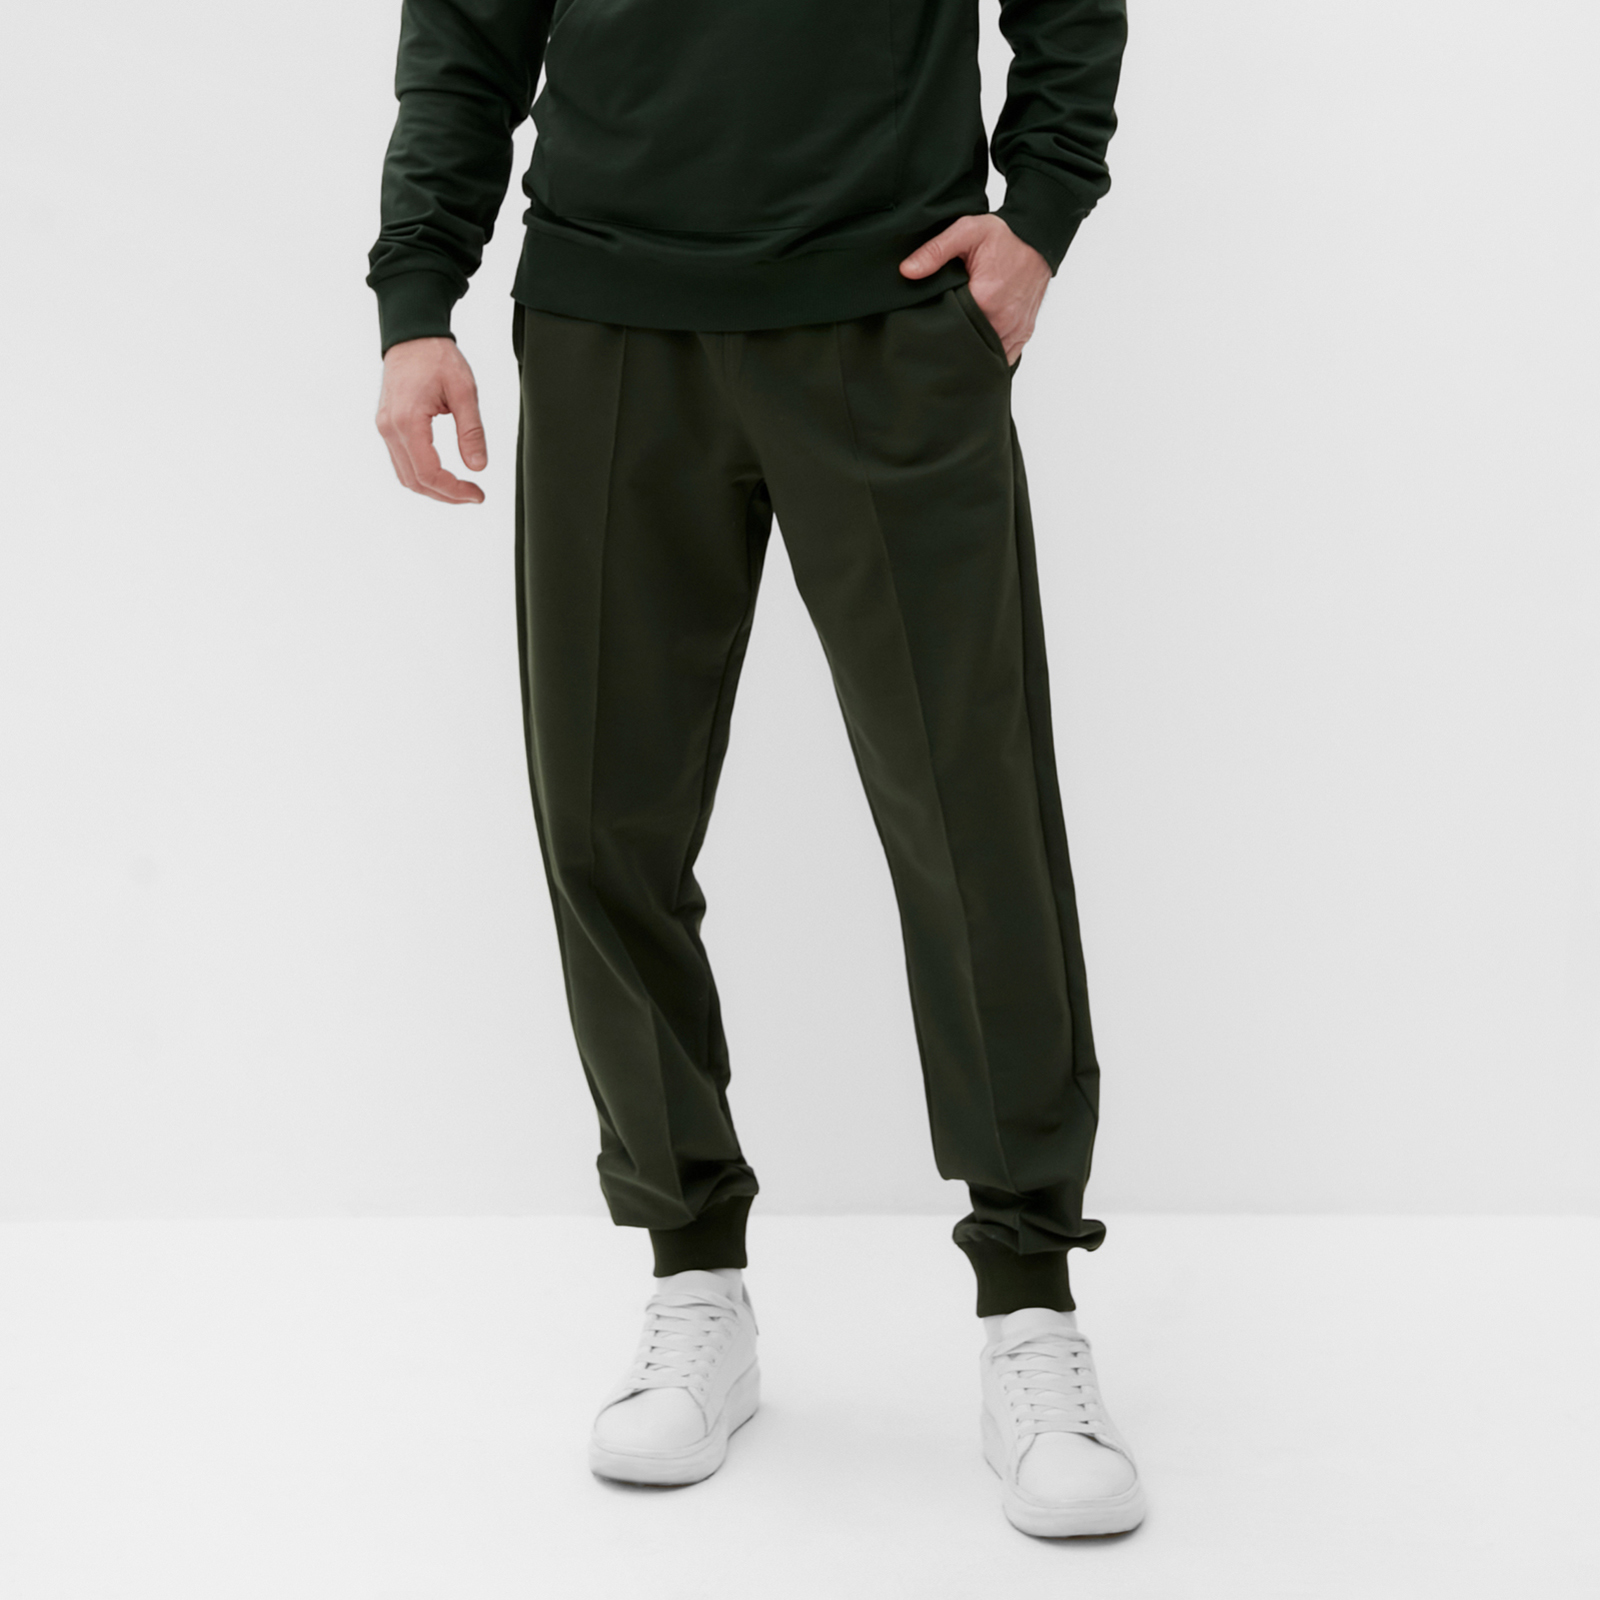 Спортивные брюки мужские DIROMM Спорт зеленые 54 RU